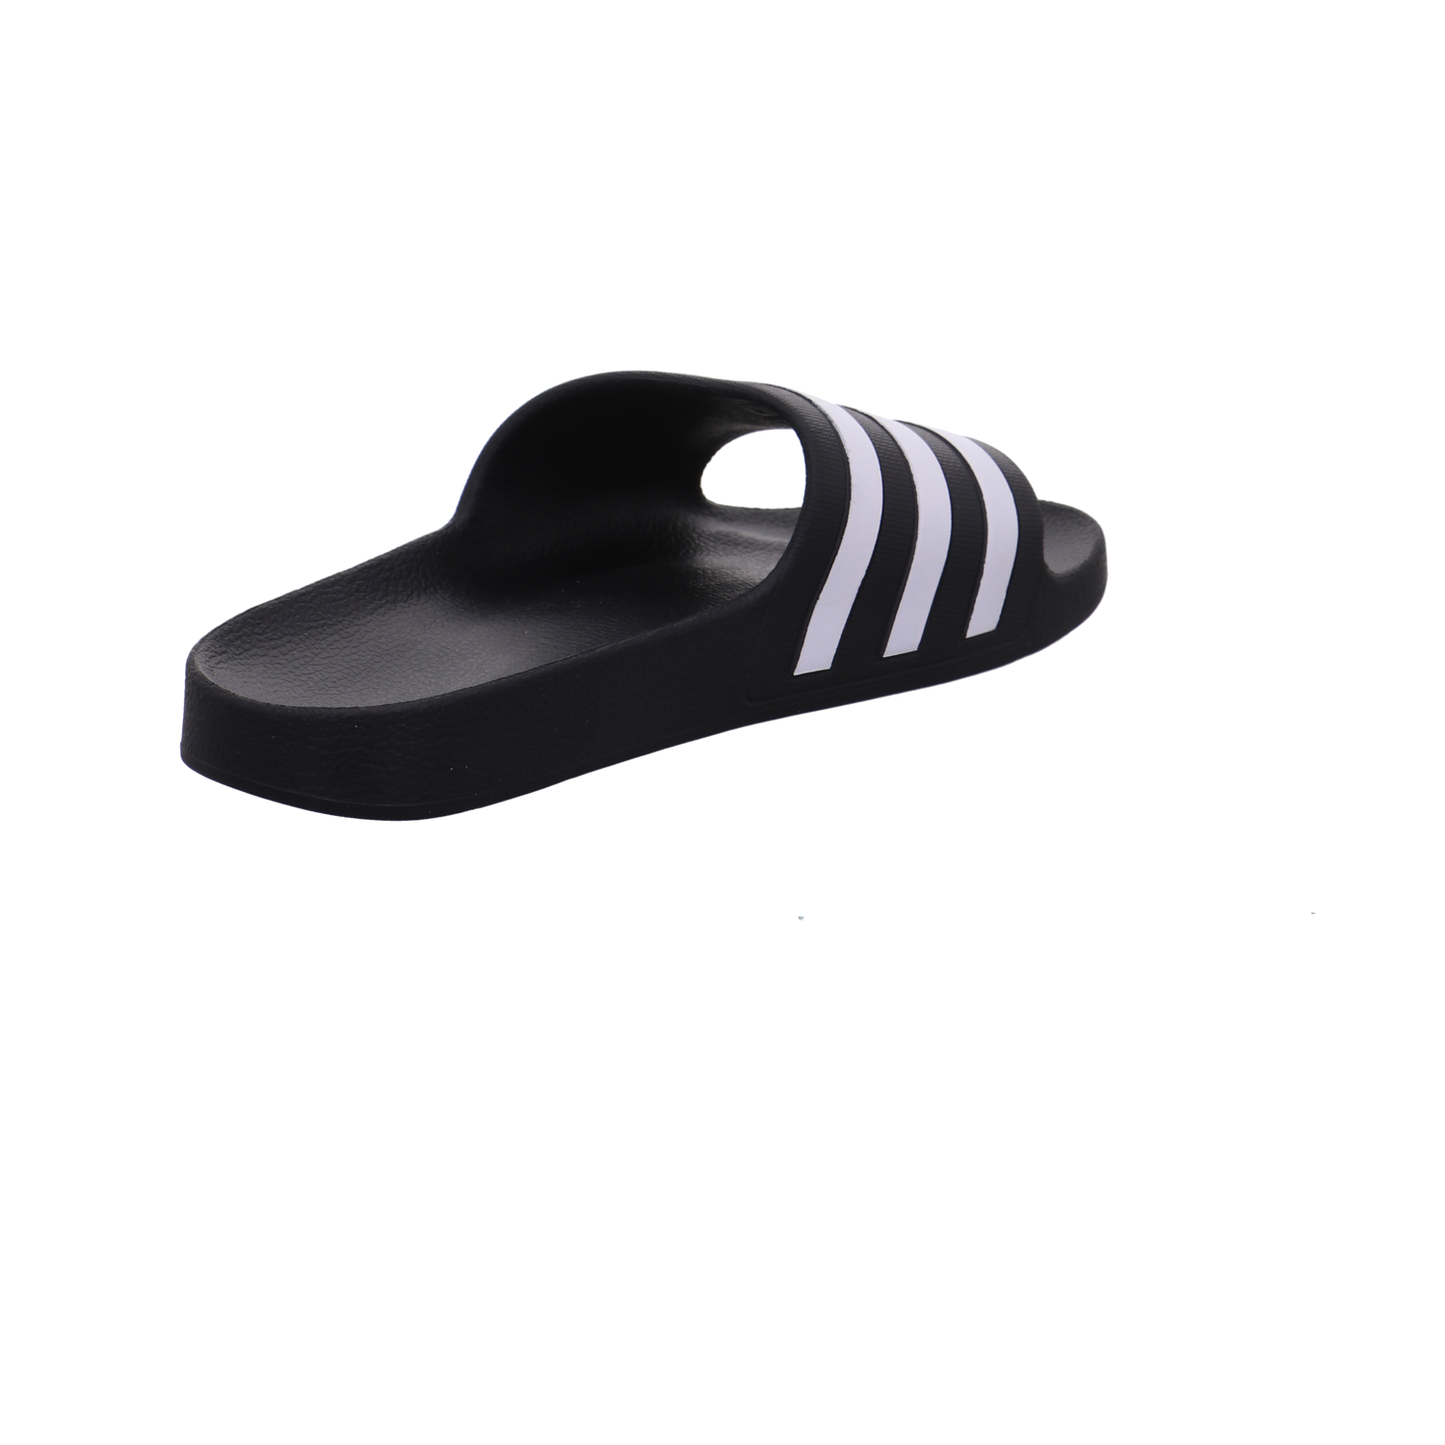 Adidas Schuhe  schwarz kombi Bild3